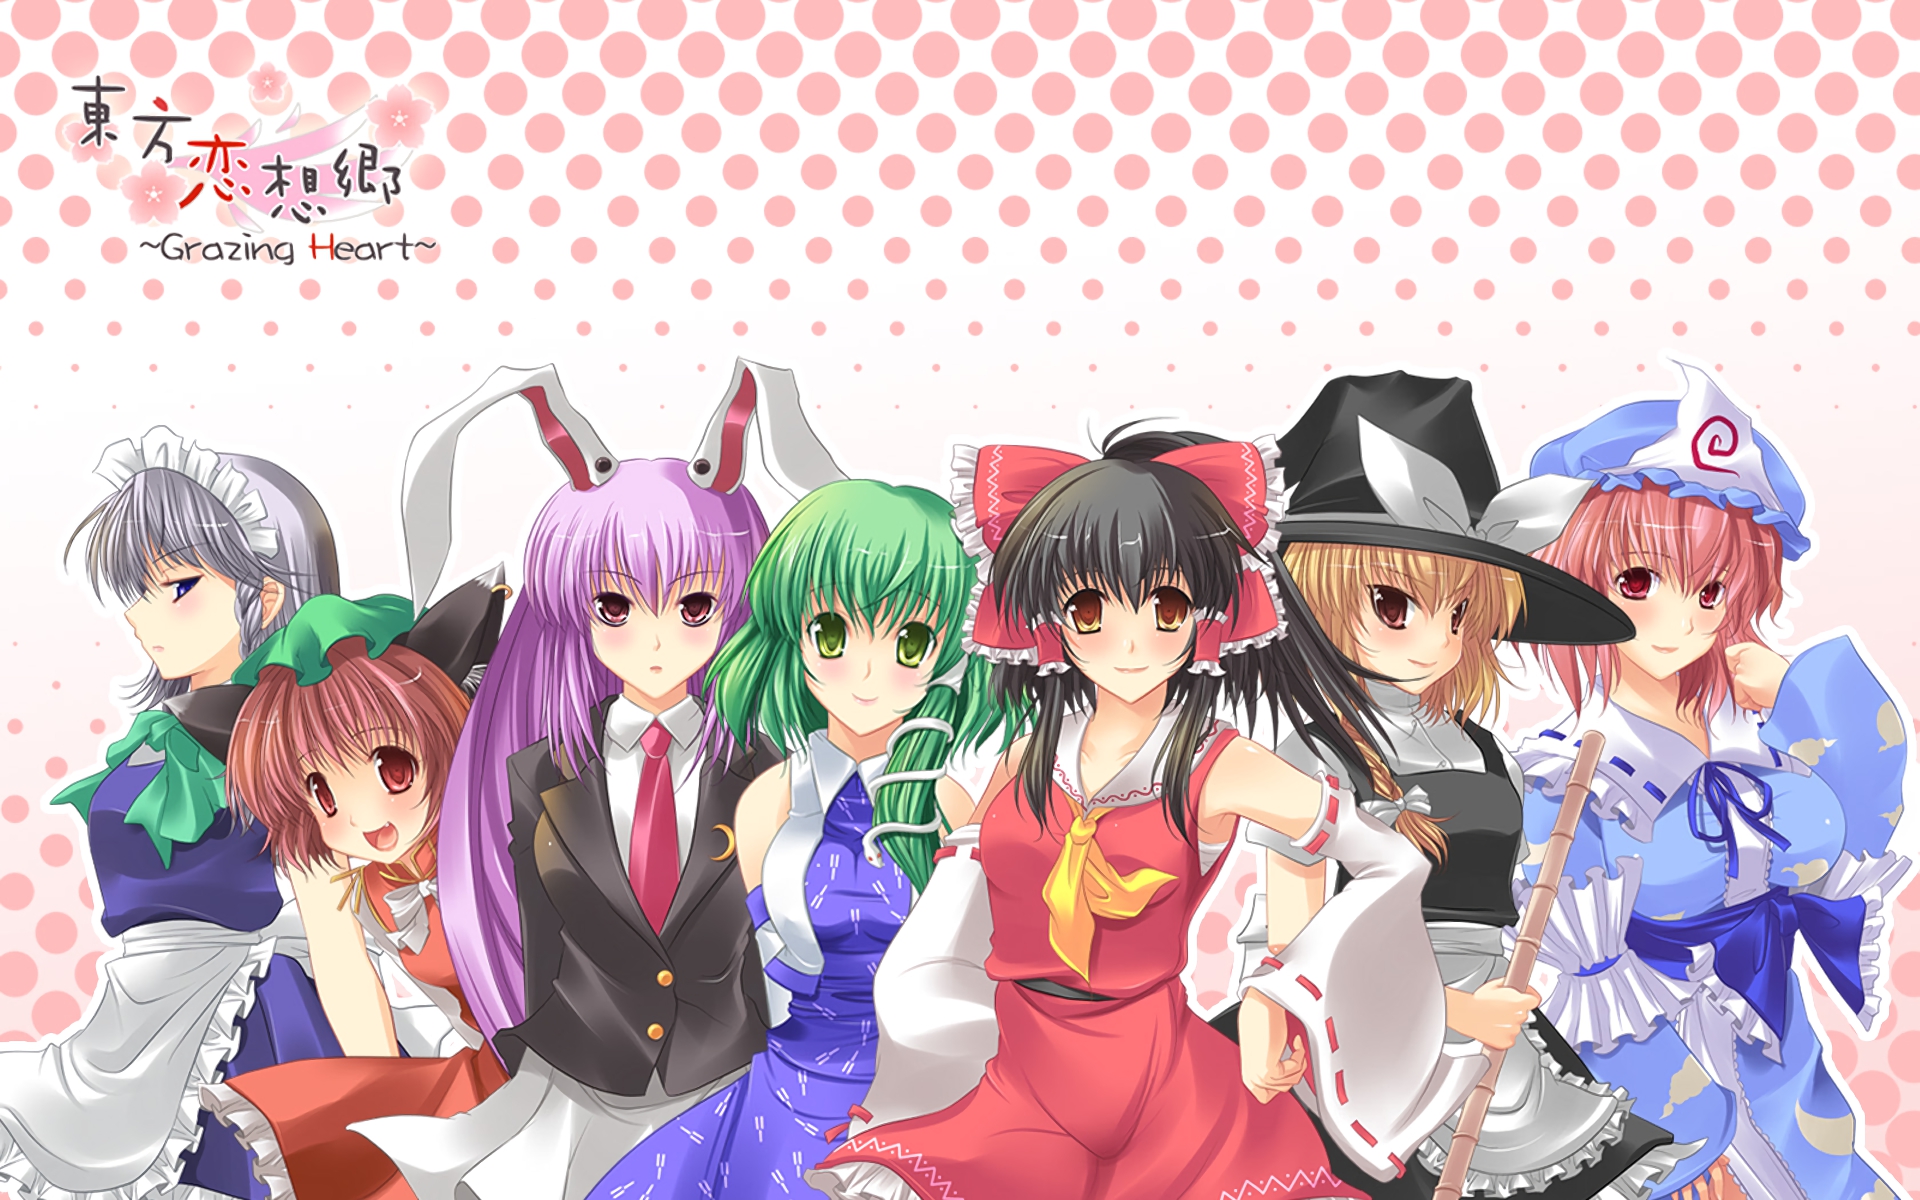 Descarga gratuita de fondo de pantalla para móvil de Animado, Touhou, Sanae Kochiya, Reimu Hakurei, Sakuya Izayoi, Marisa Kirisame, Yuyuko Saigyouji, Chen (Touhou), Reisen Udongein Inaba.